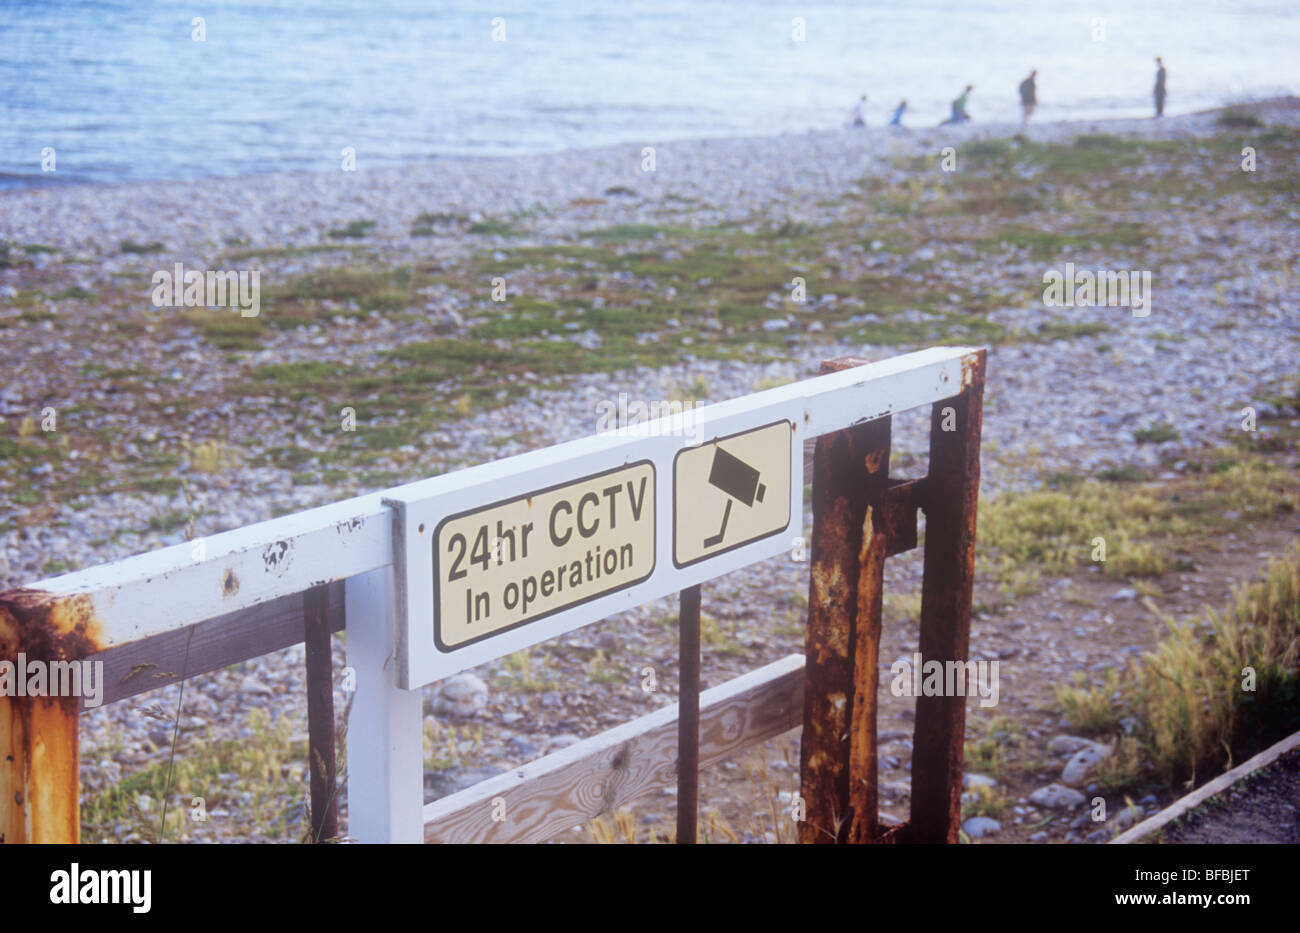 Grobe steinigen Strand mit Unkraut und Meer hinaus mit rostigen Tor und ikonische Bild von Kamera und Warnung 24hr CCTV in Betrieb Stockfoto